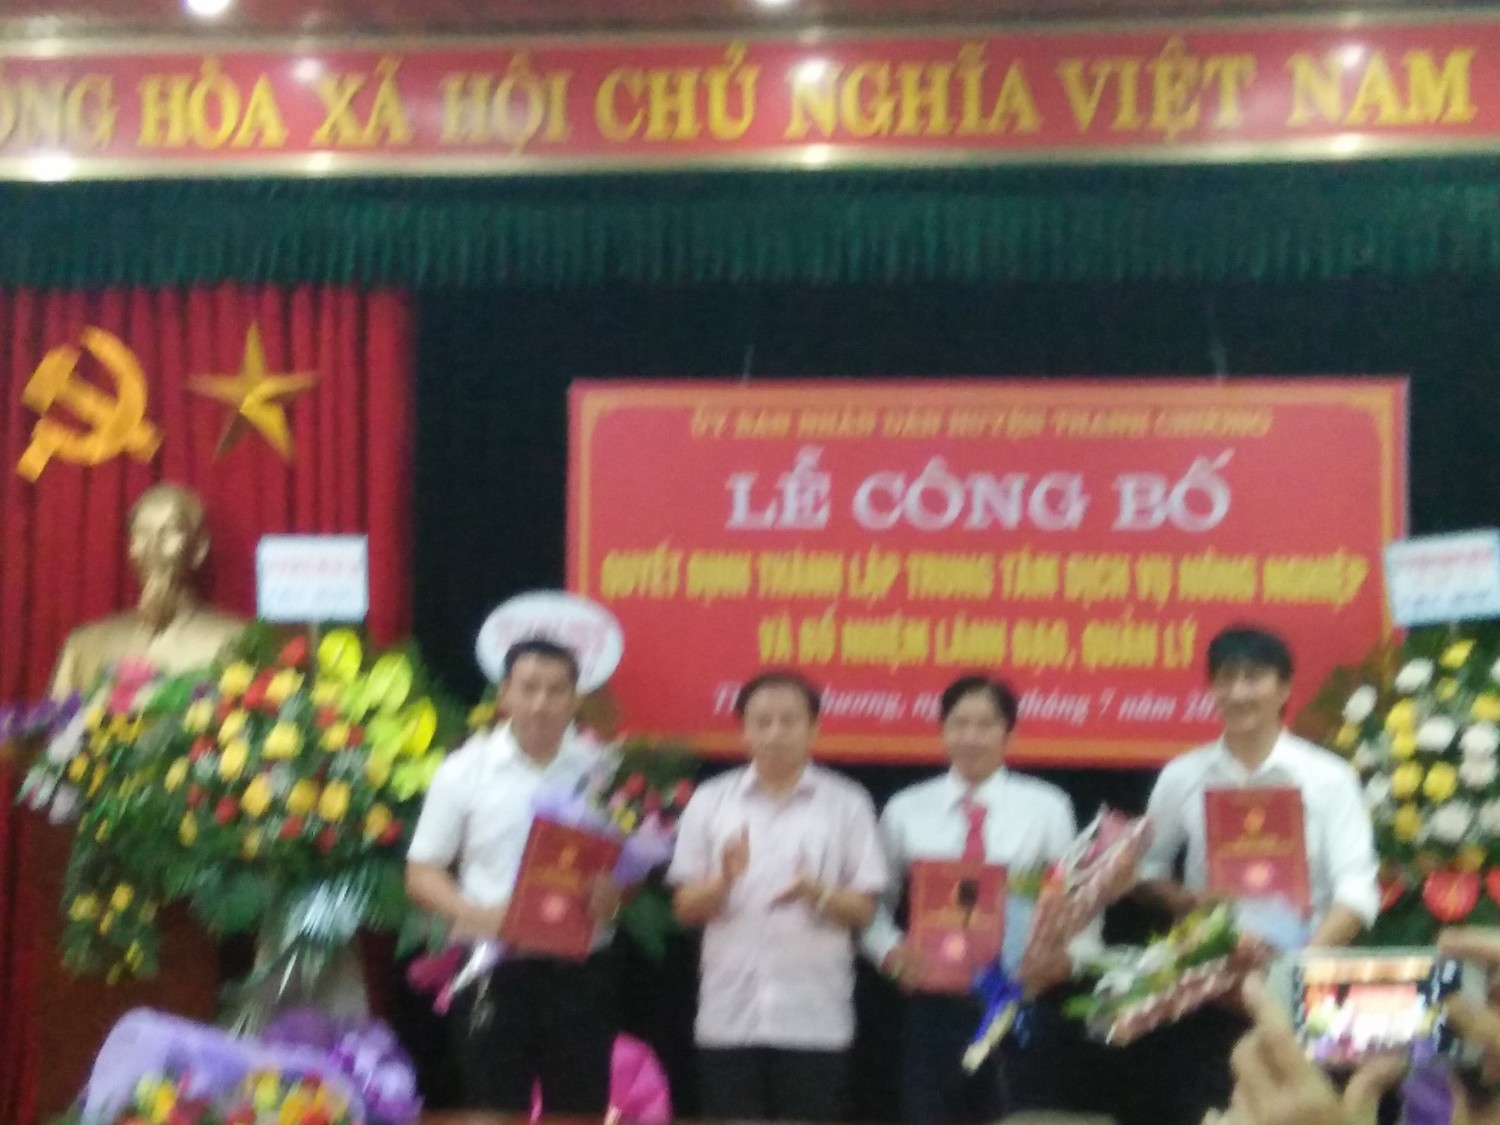 UBND huyện Thanh Chương:  Công bố thành lập Trung tâm Dịch vụ nông nghiệp huyện Thanh Chương.